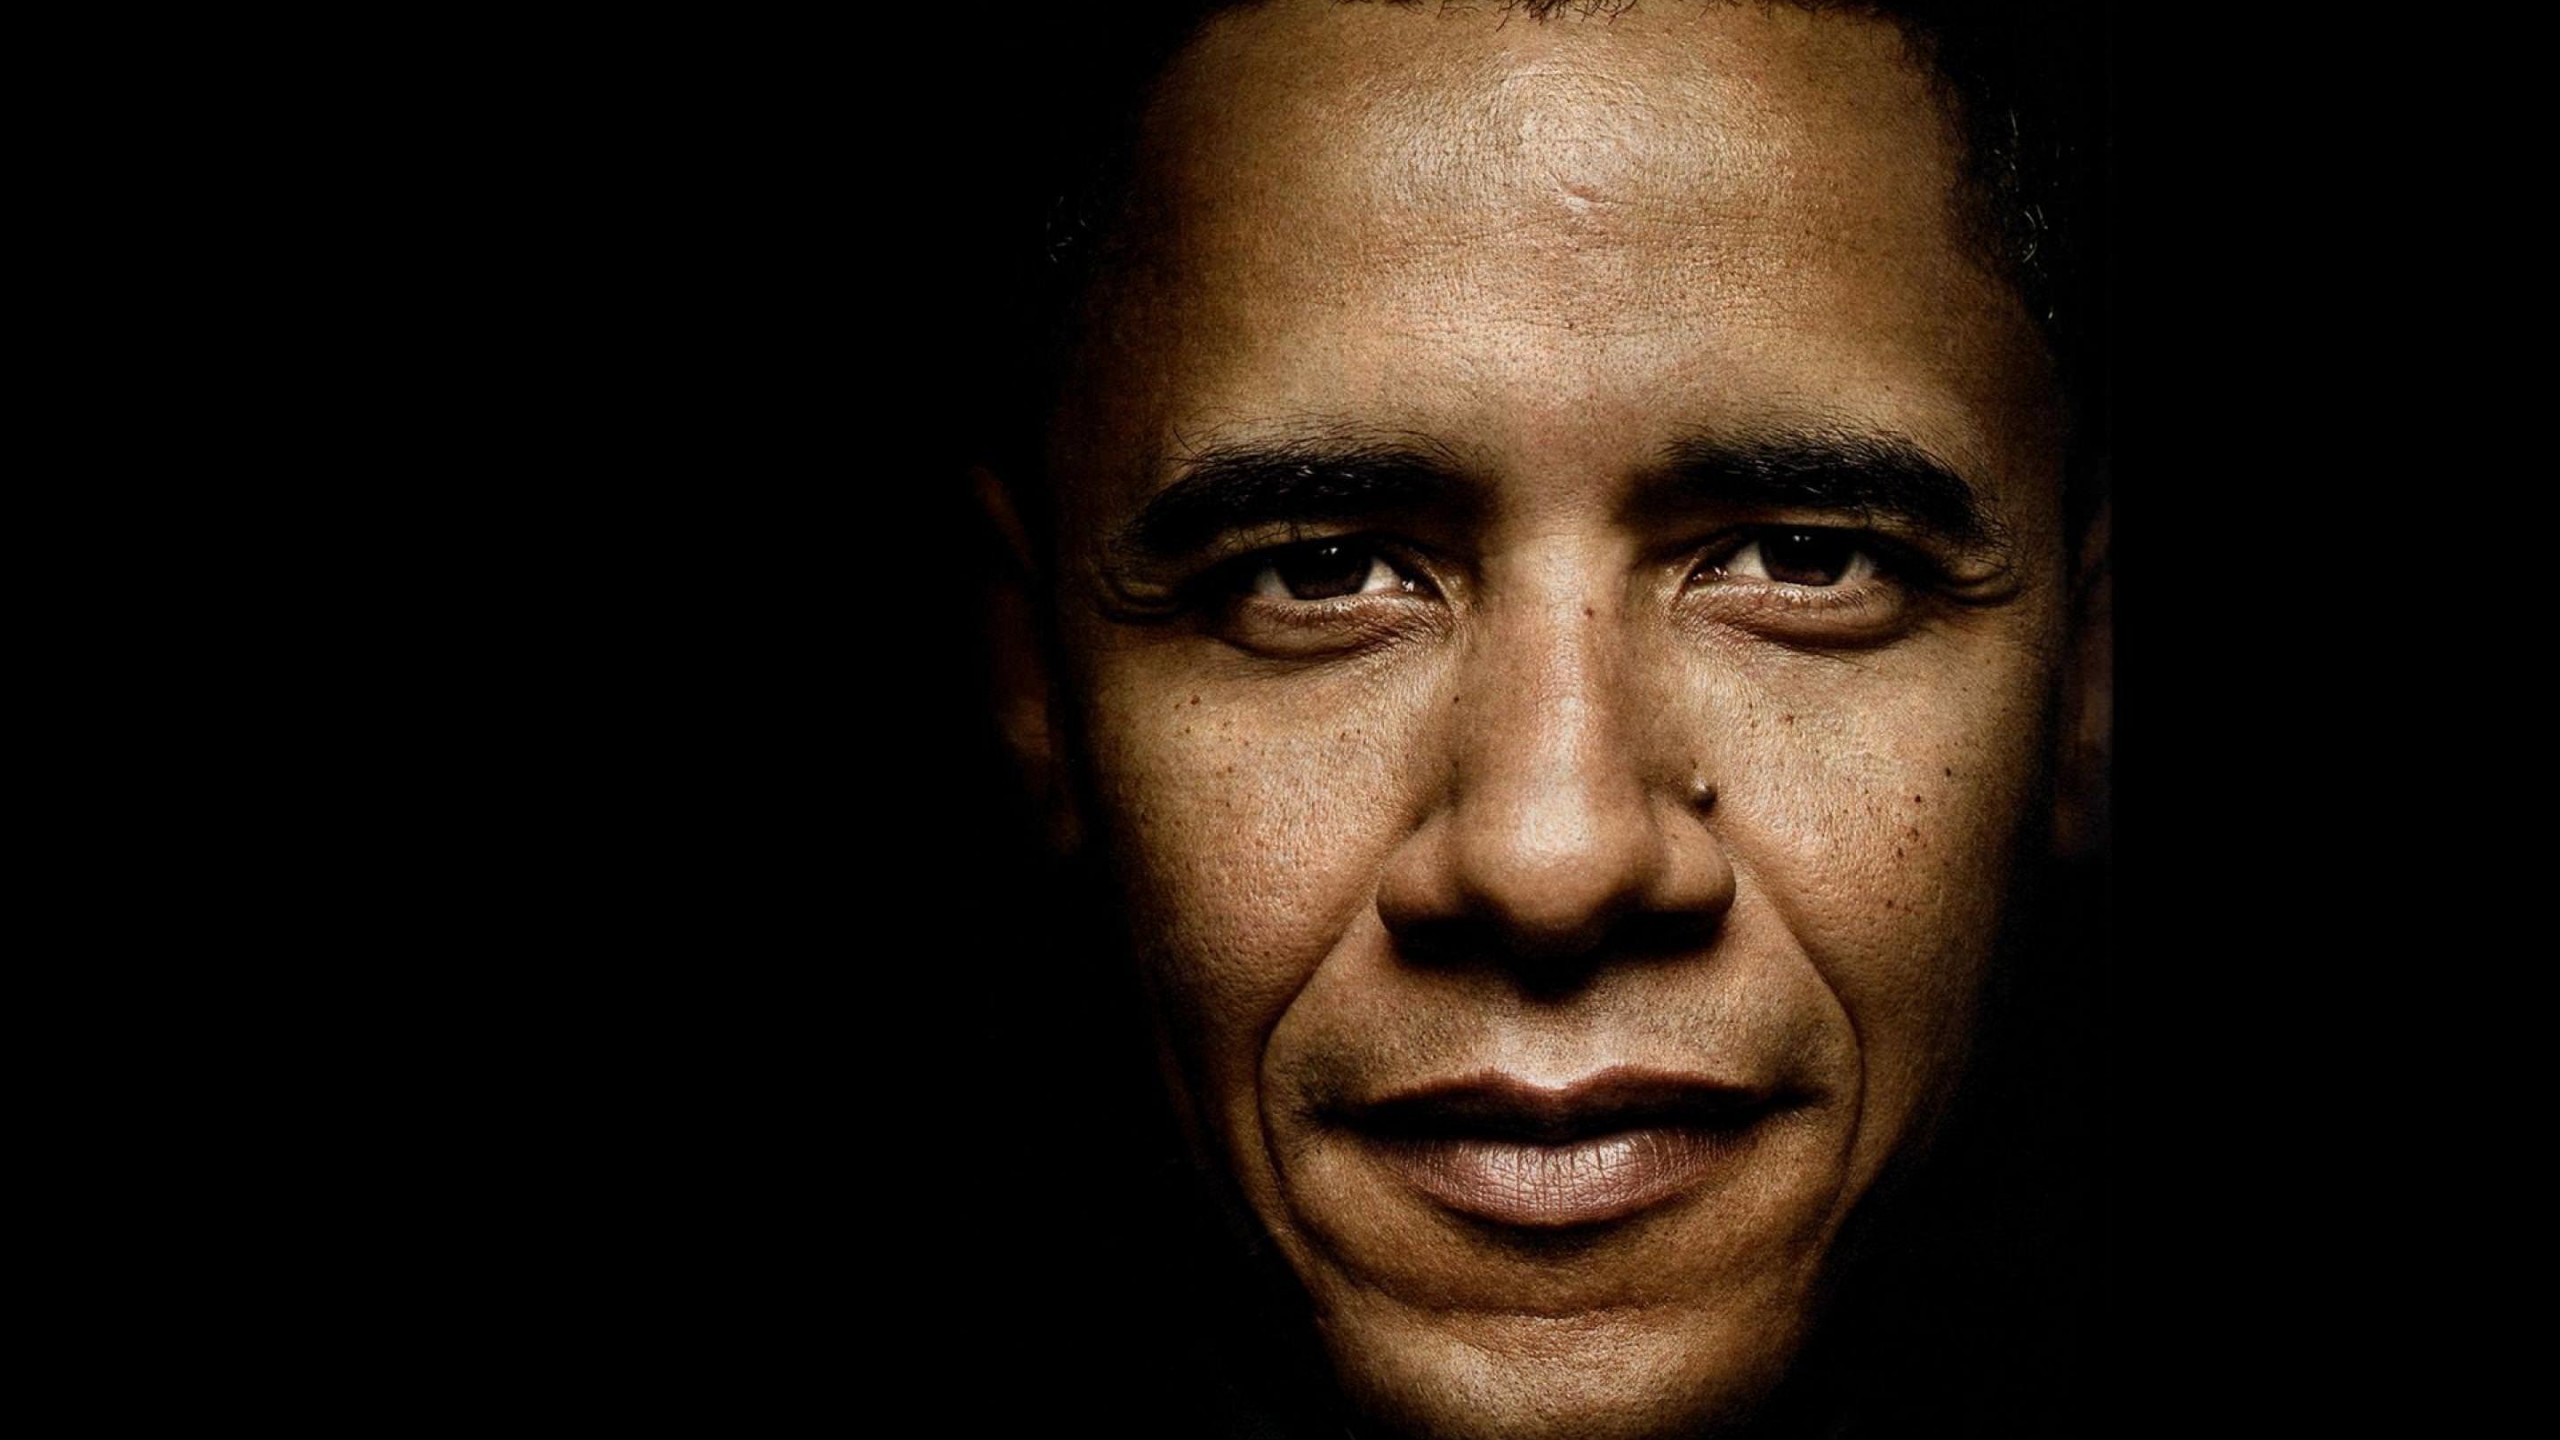 President Barack Obama Portrait Wallpaper for Social Media YouTube Channel Art